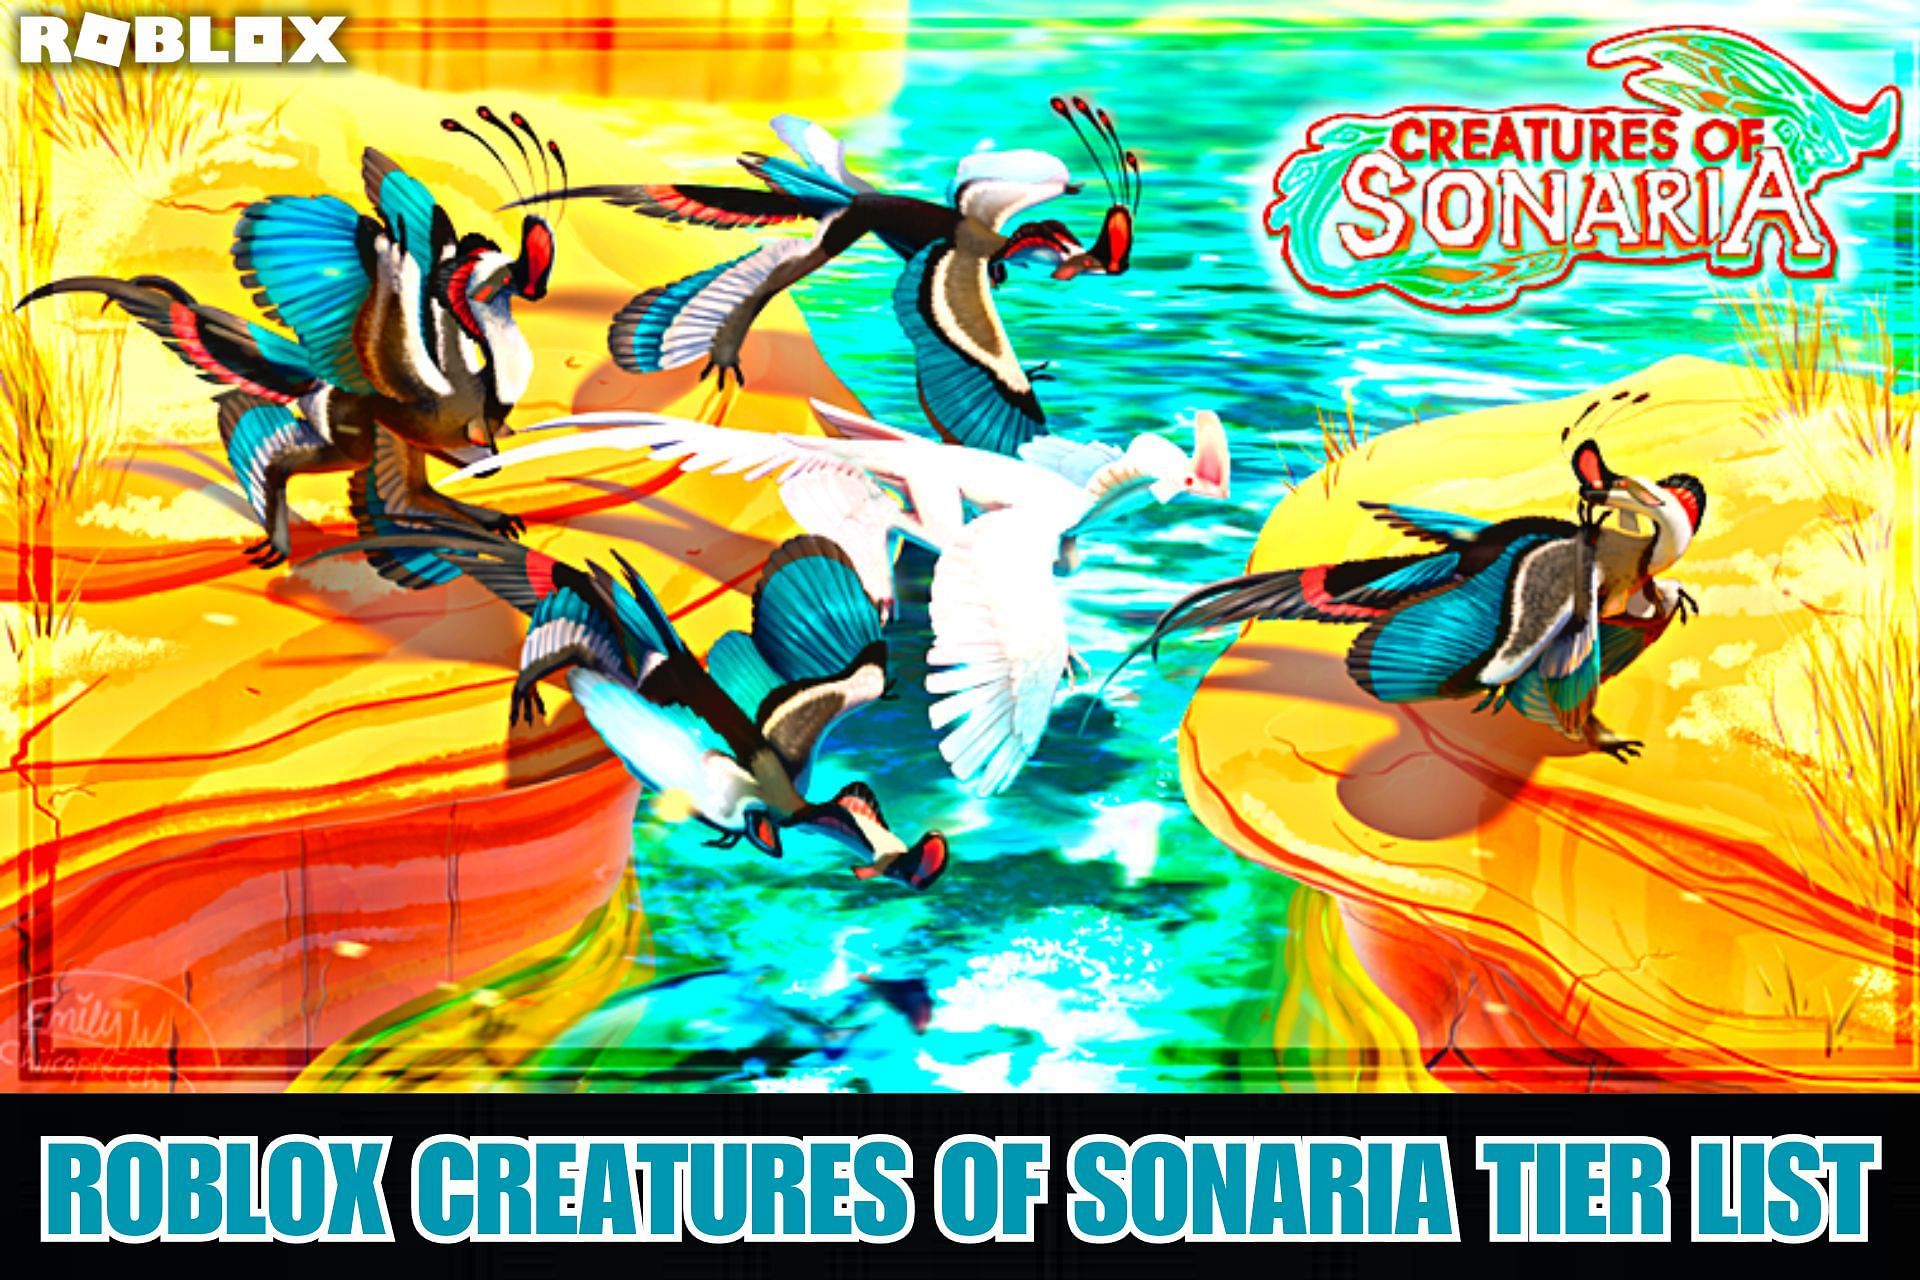 Creatures of Sonaria 